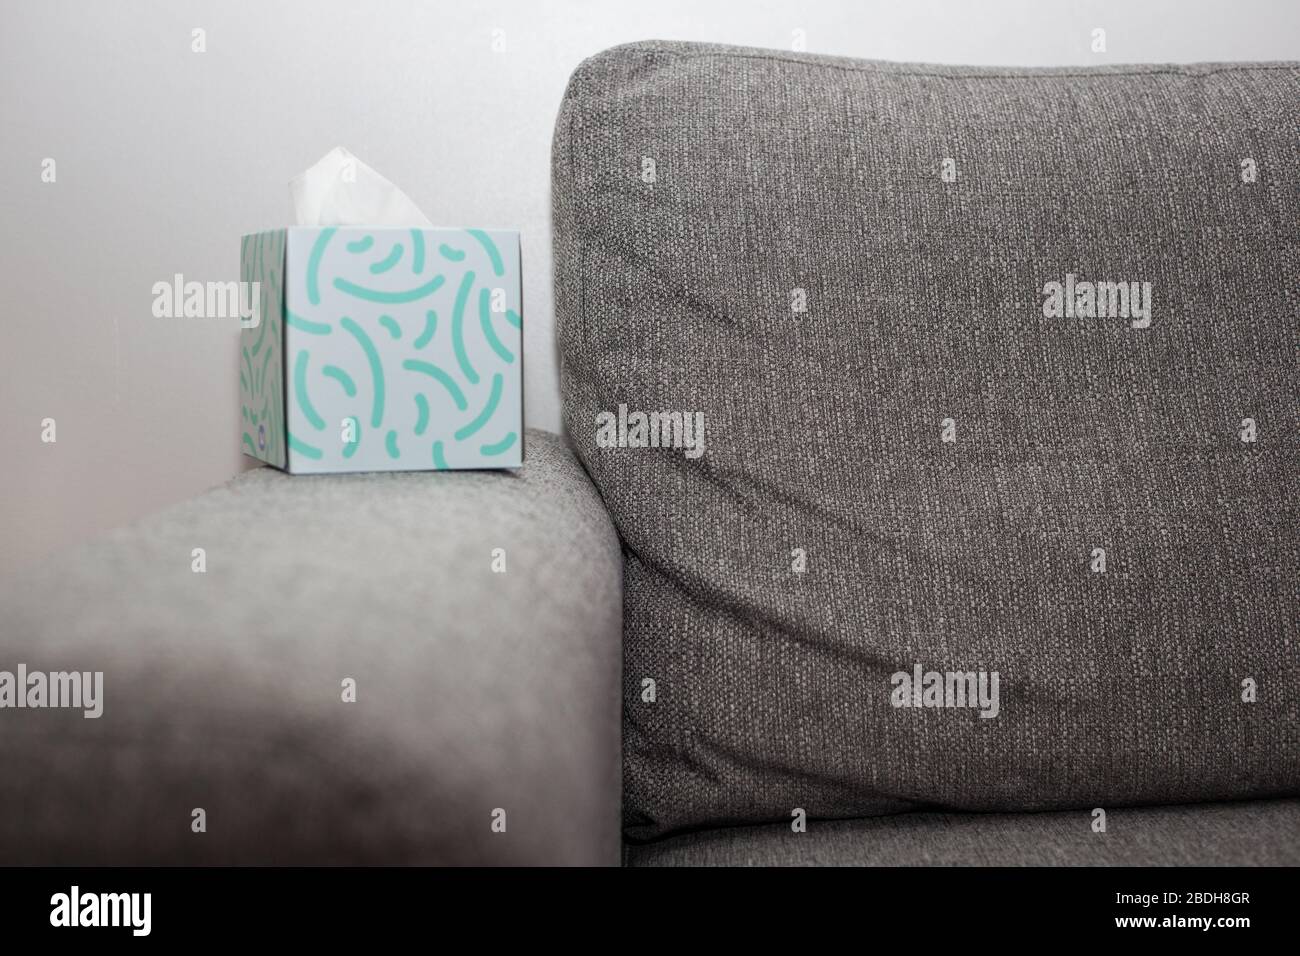 Box of tissues next to grey sofa Stock Photo